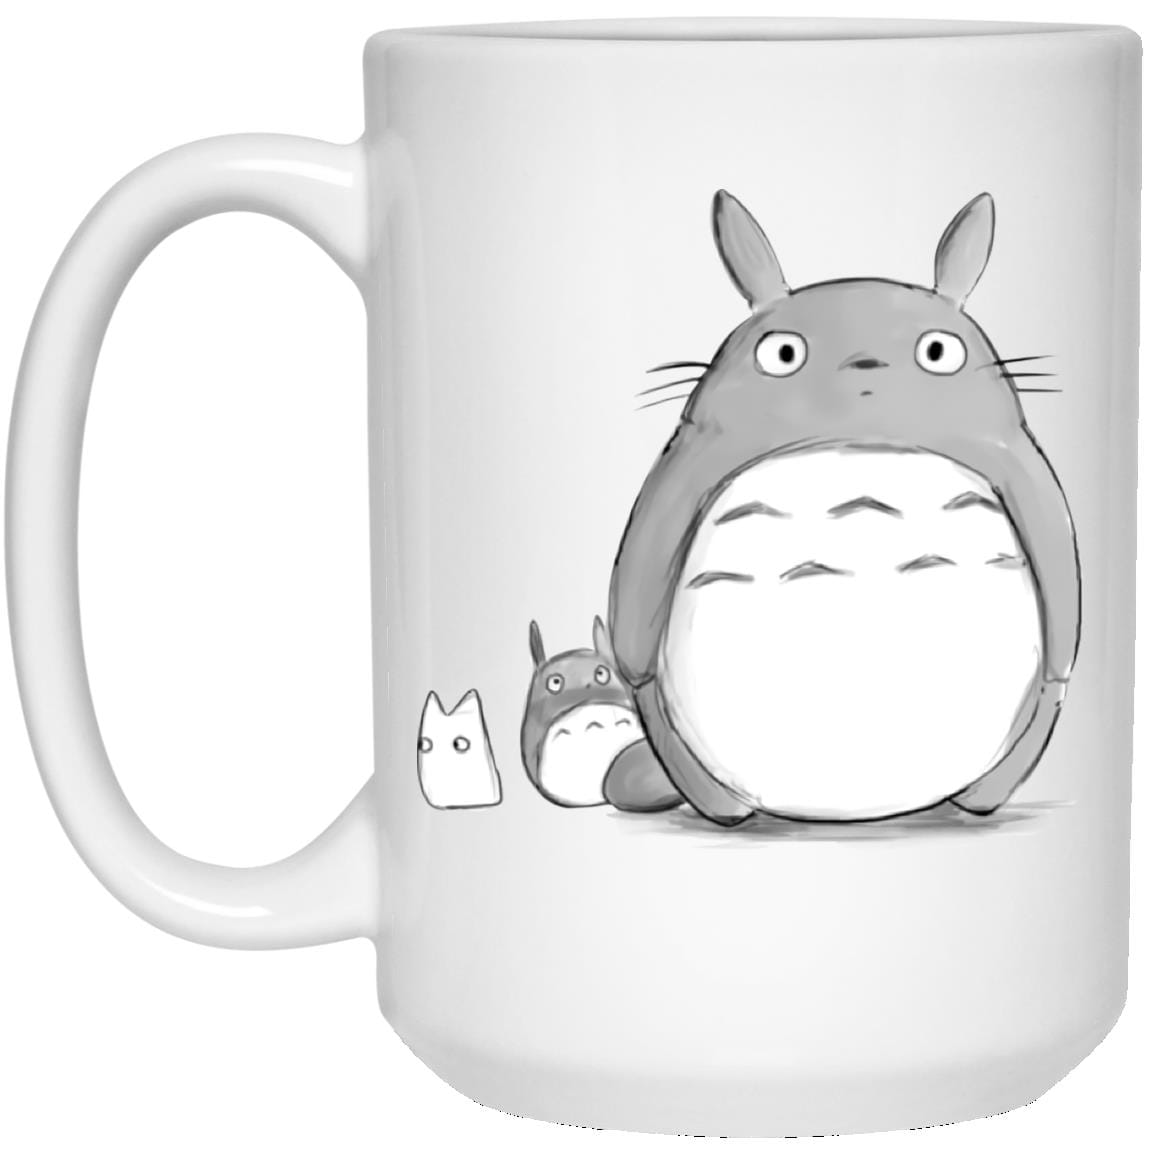 My Neighbor Totoro: The Giant and the Mini Mug Ghibli Store ghibli.store